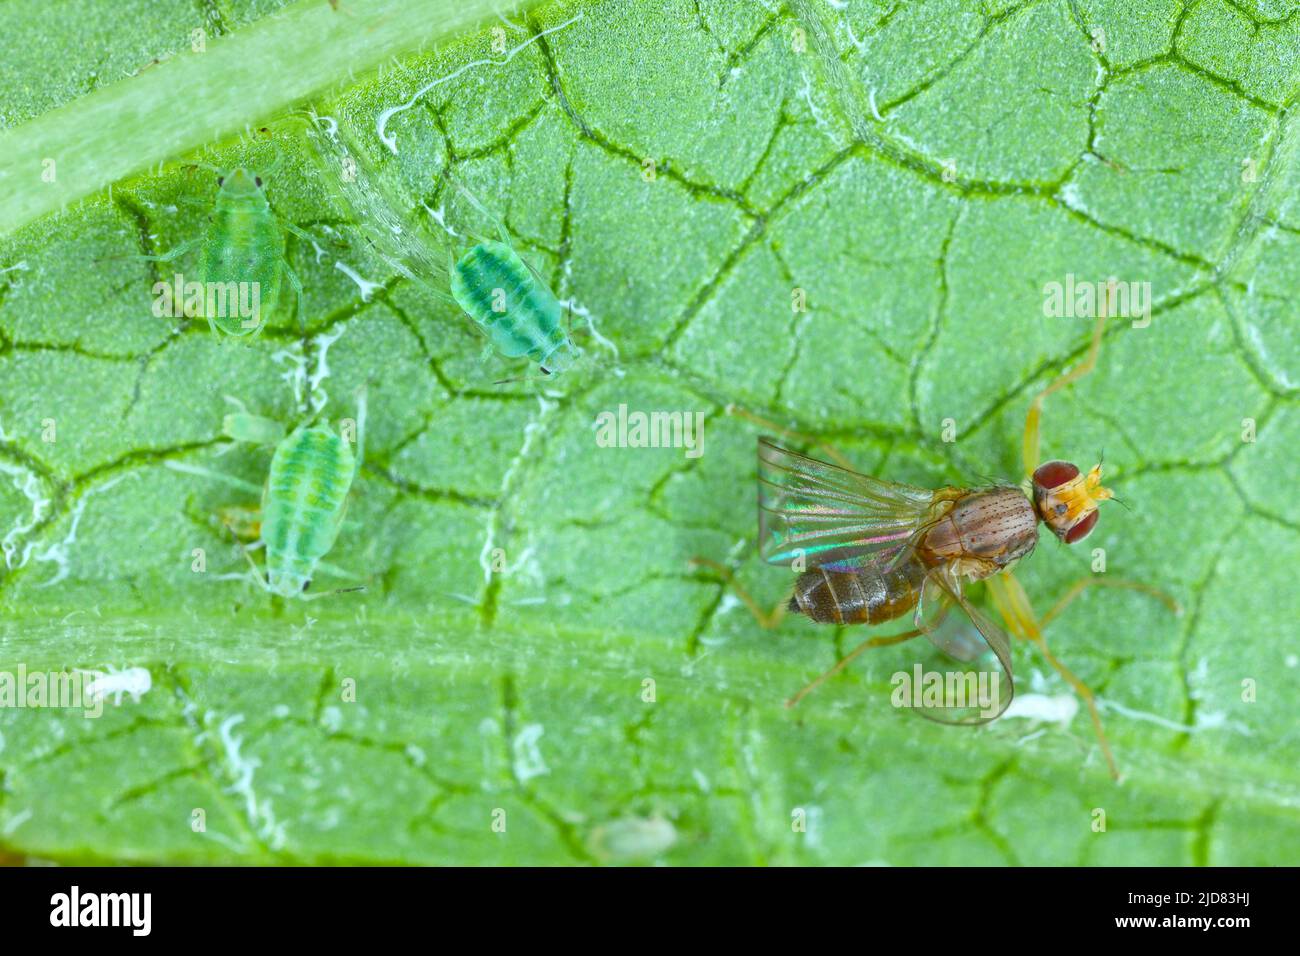 Die Fliege ist auf dem Blatt, das an den Honigtau, der von den Blattläusen abgesondert wird, klebt. Stockfoto